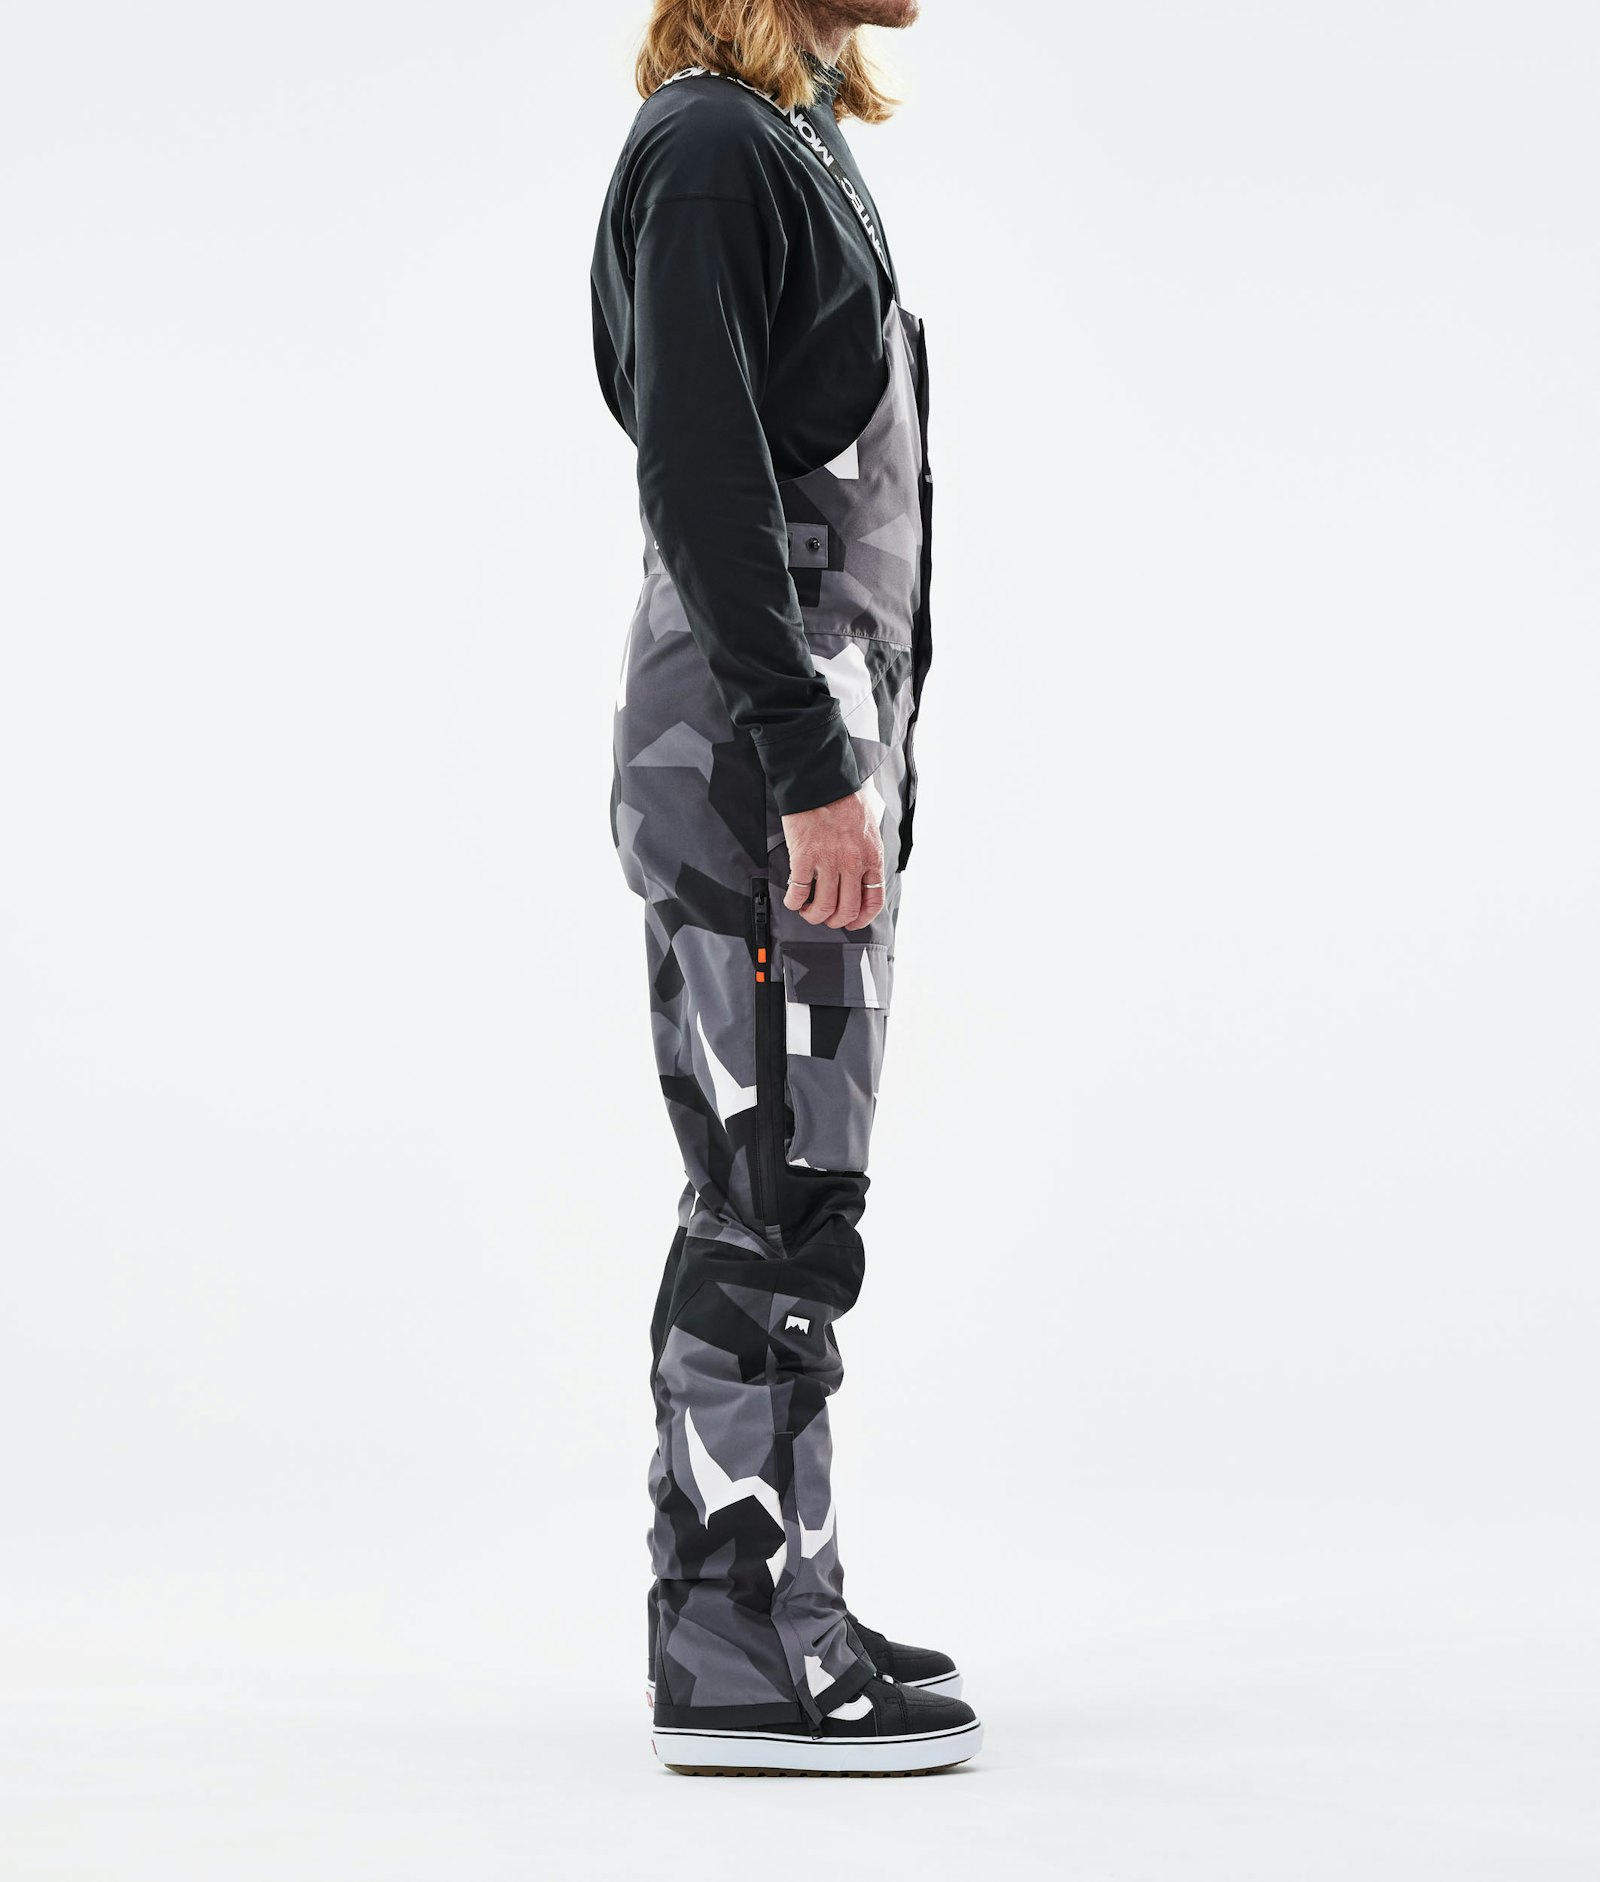 Fawk 2021 Pantalones Snowboard Hombre Arctic Camo/Black